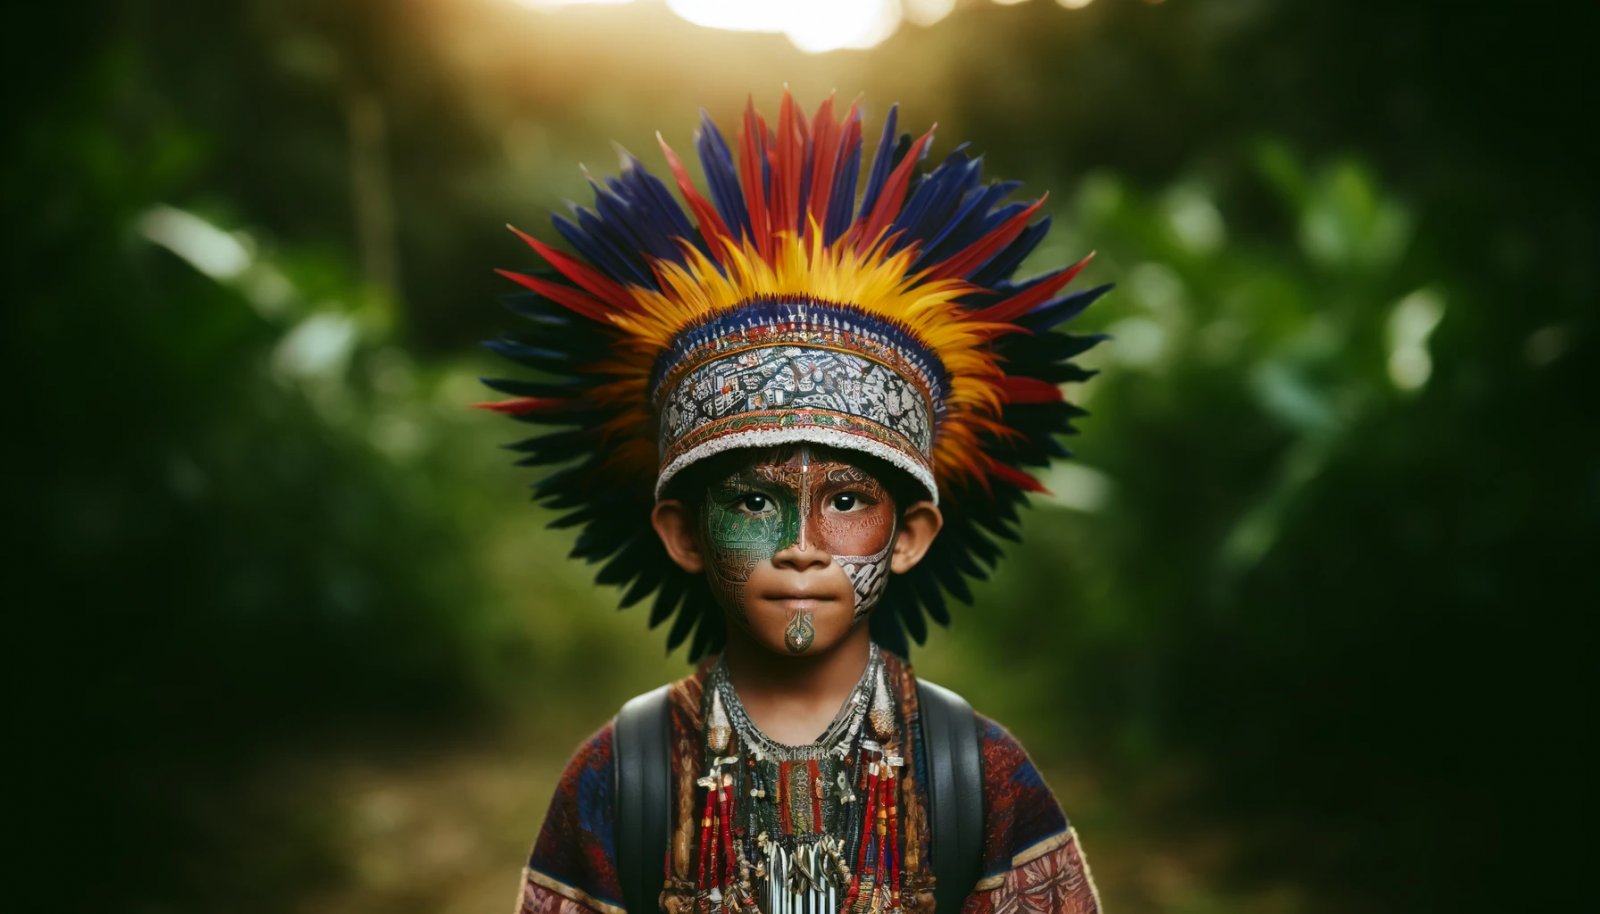 Criança indígena com pintura facial e cocar colorido.